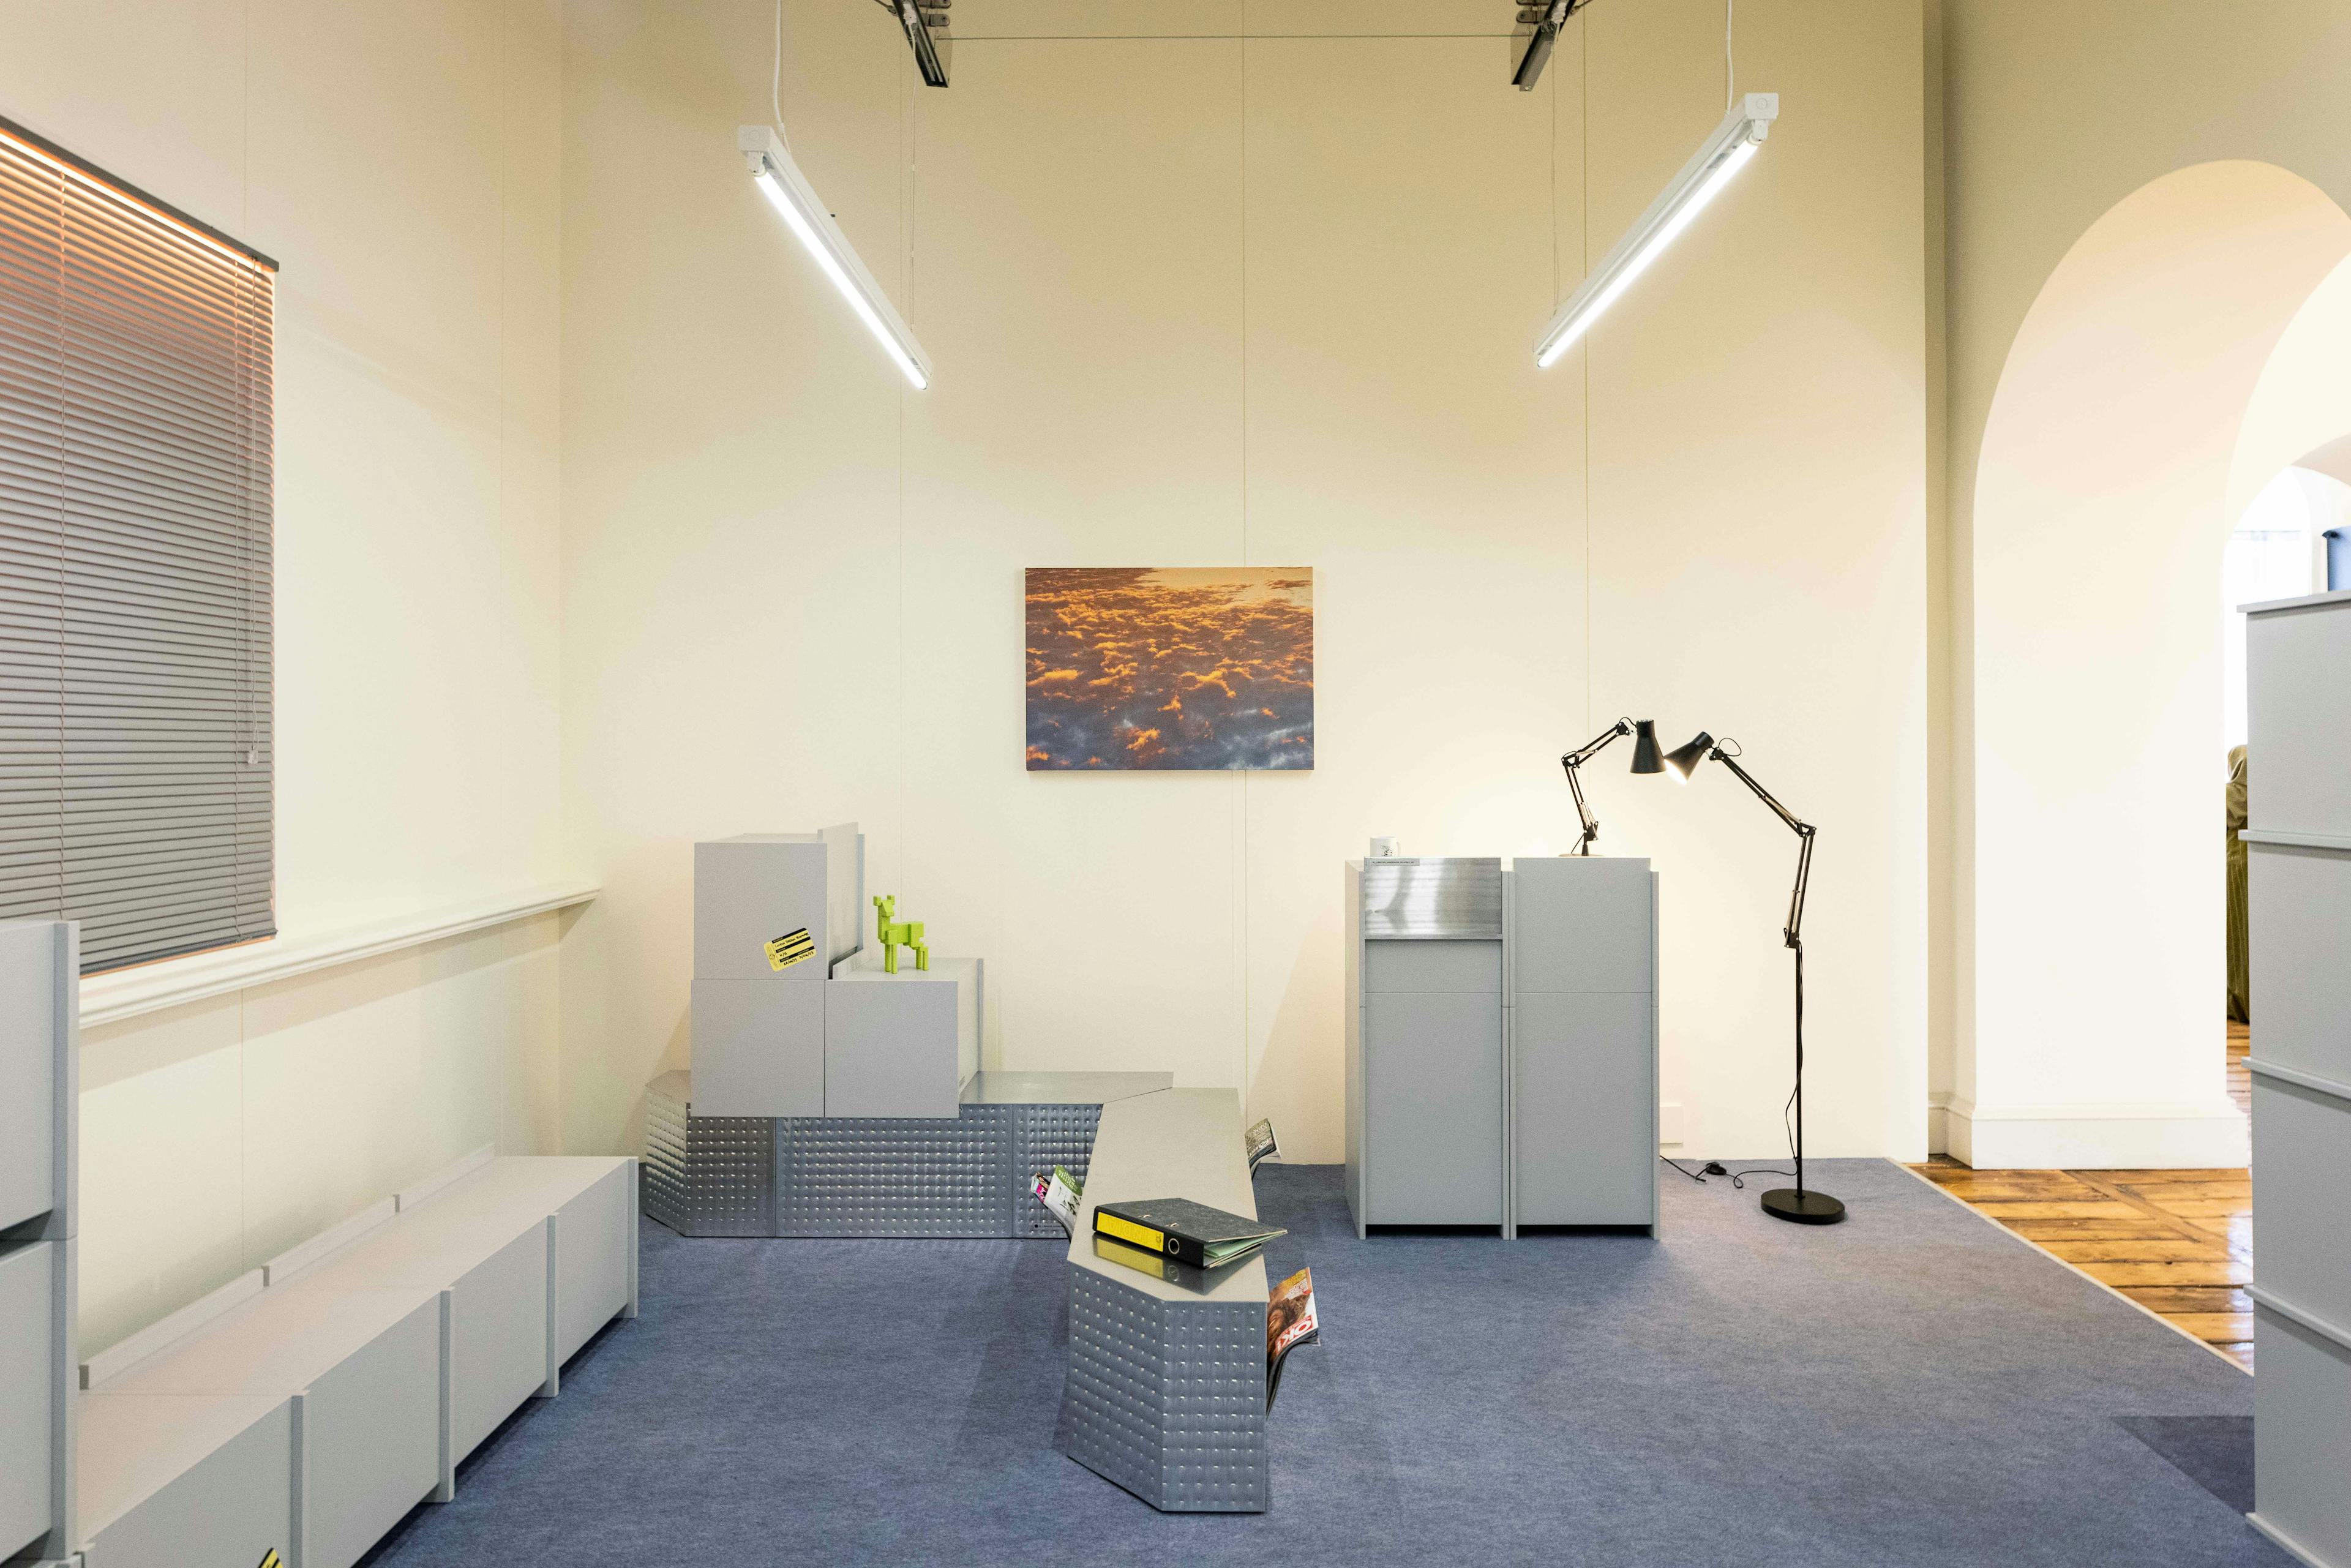 Een tentoonstellingsruimte met objecten die stereotiep een kantooromgeving voorstellen: kasten, lampen, TL-verlichting, etc.